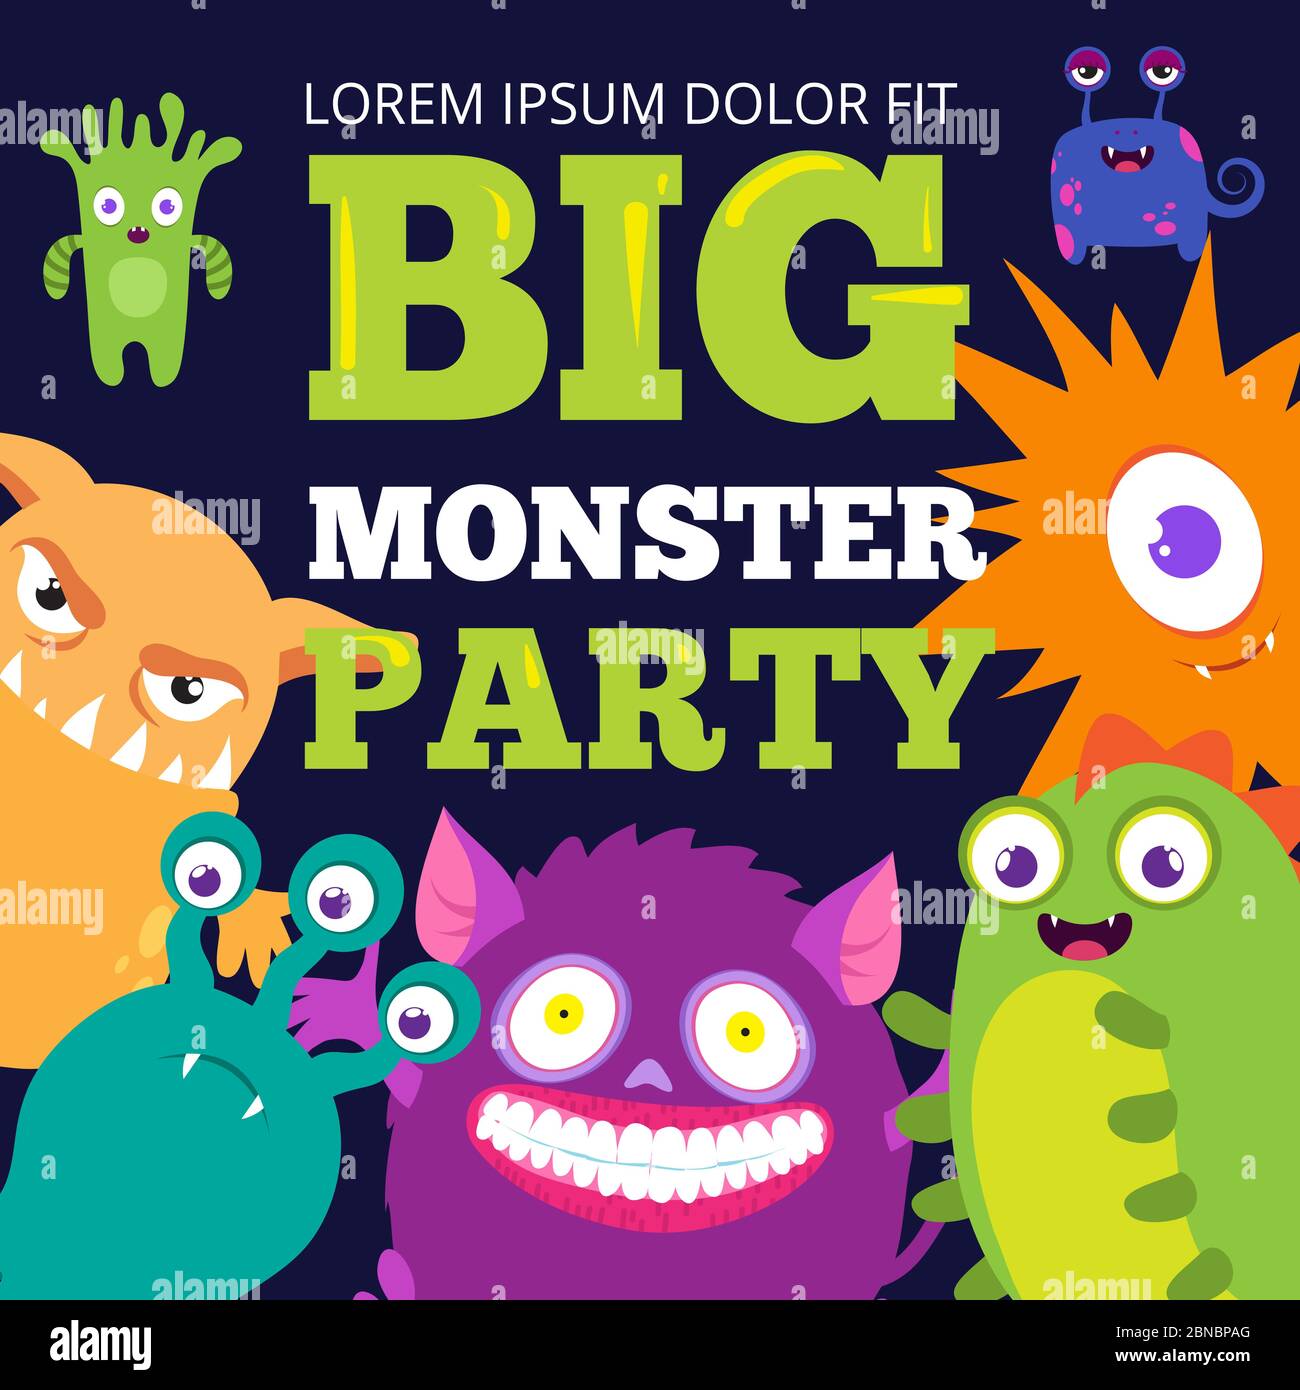 Halloween Monster Party Banner Vorlage mit niedlichen Comic-Figuren. Einladung Geburtstagsplakat mit glücklichen Monstern. Vektorgrafik Stock Vektor